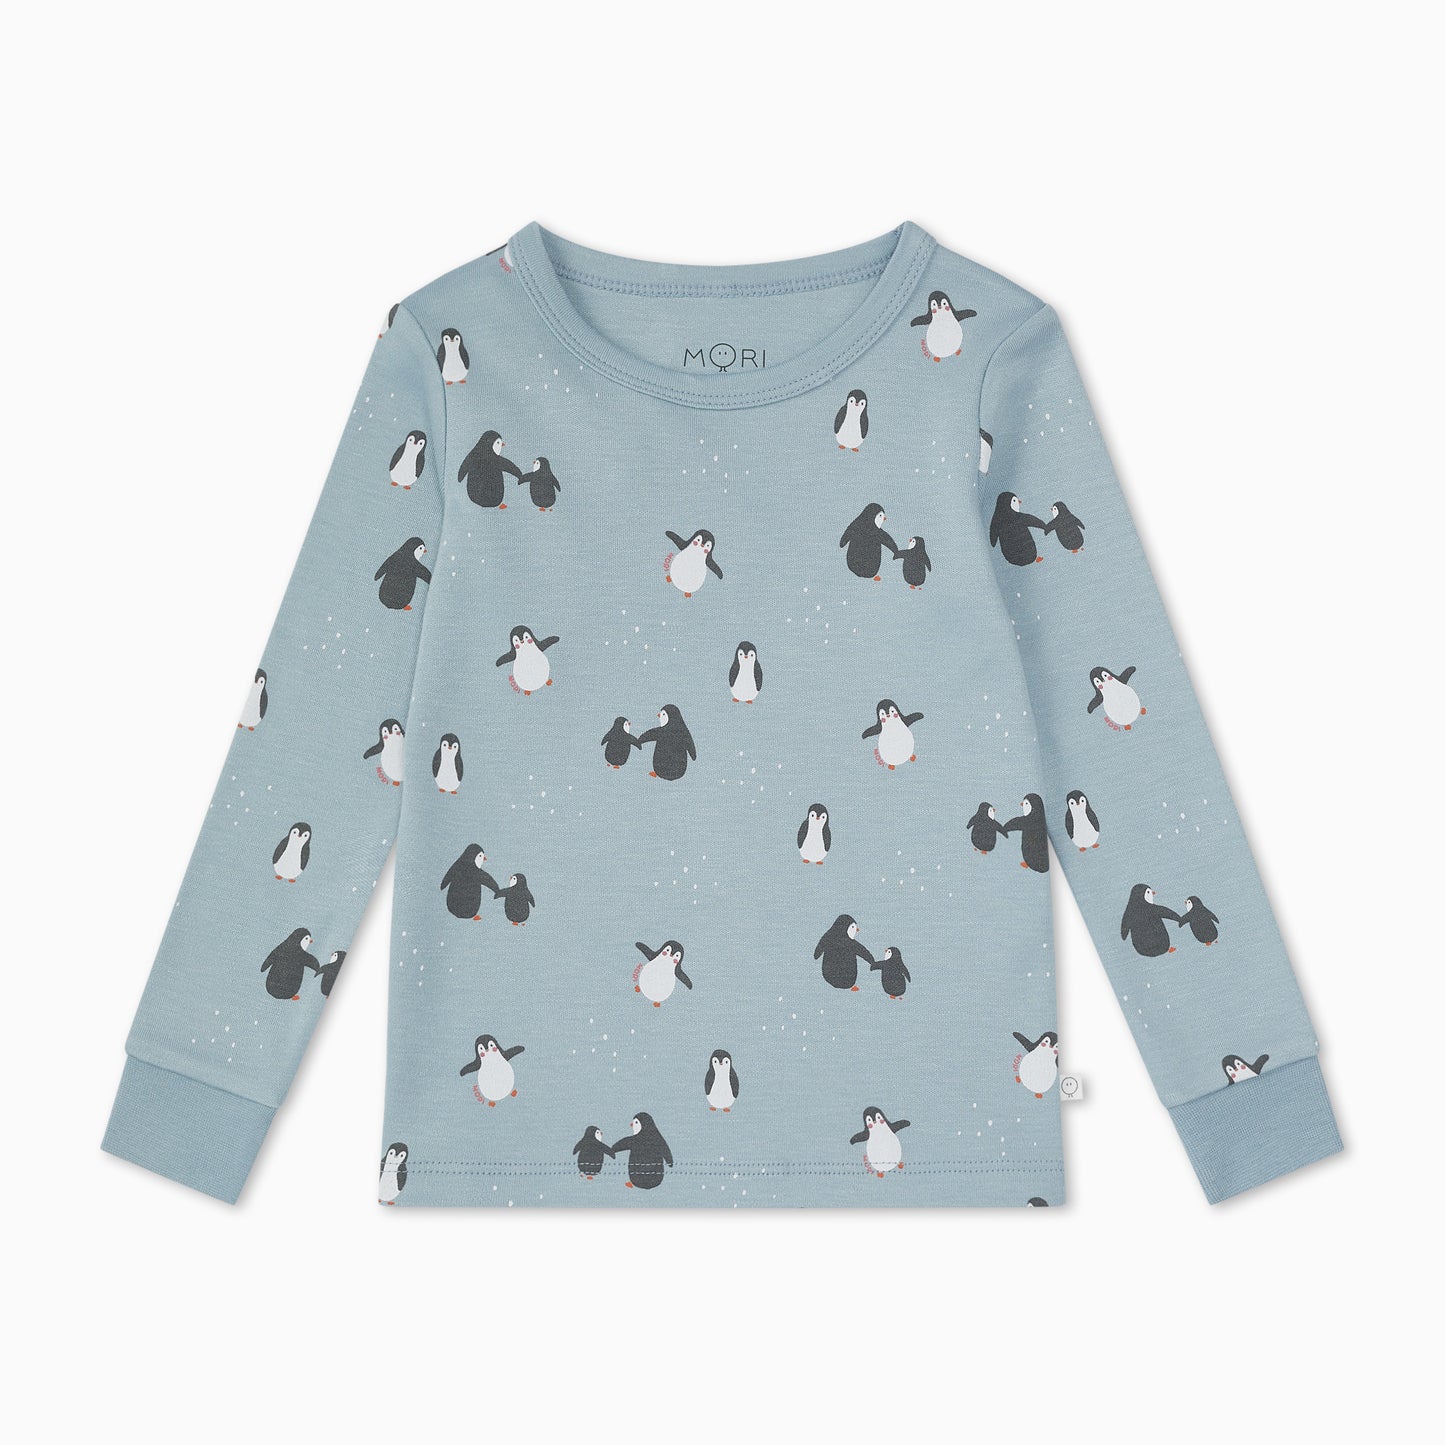 Penguin print pyjamas